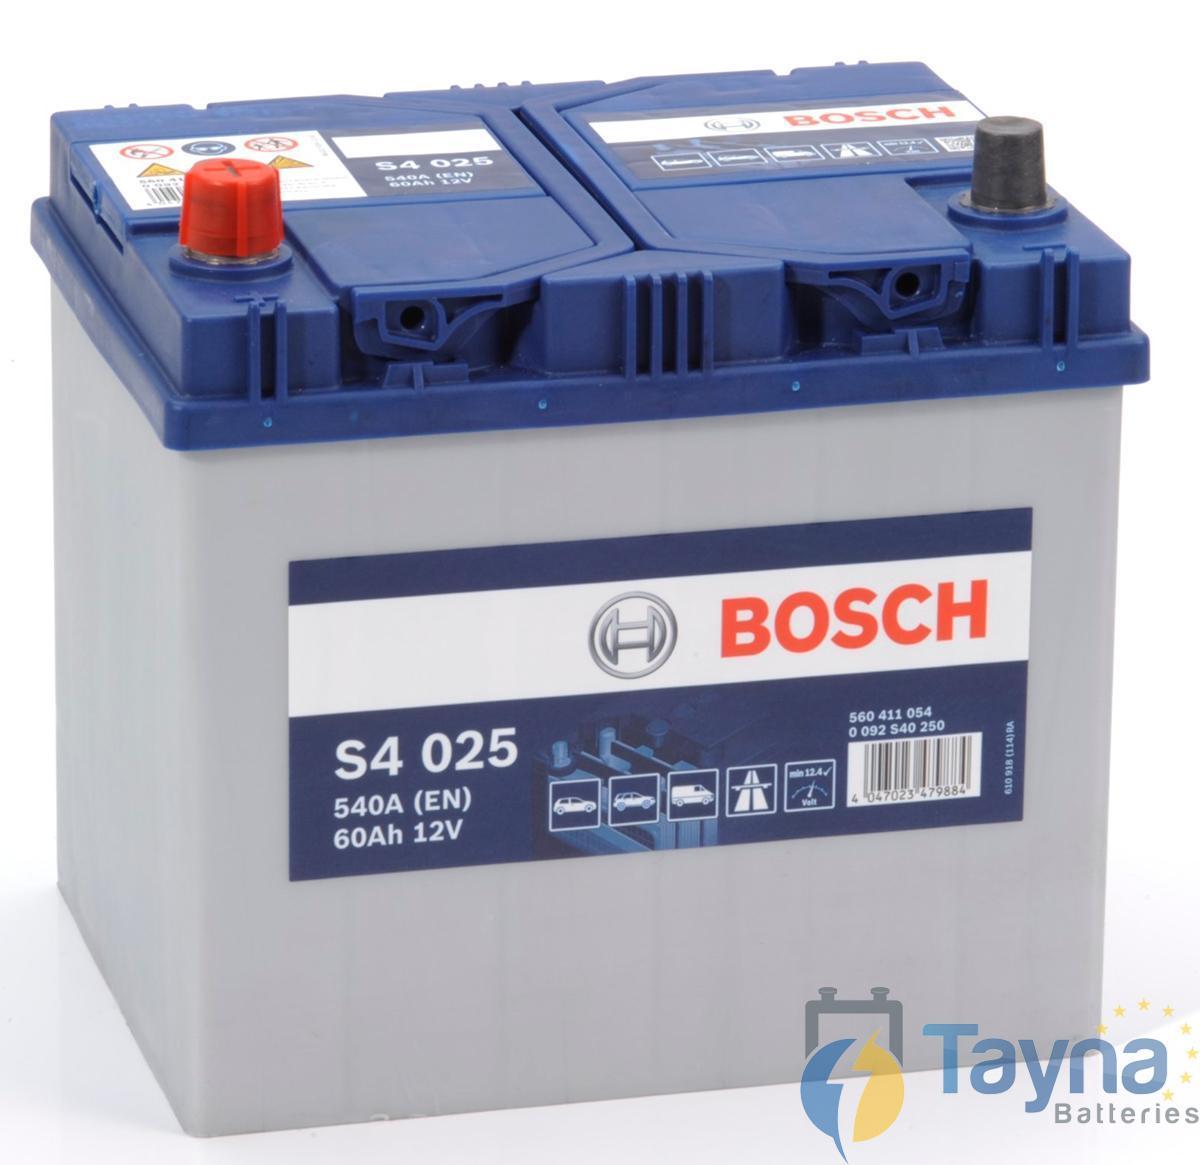 Bosch S4025 - Batterie Auto - 60a/h - 54...